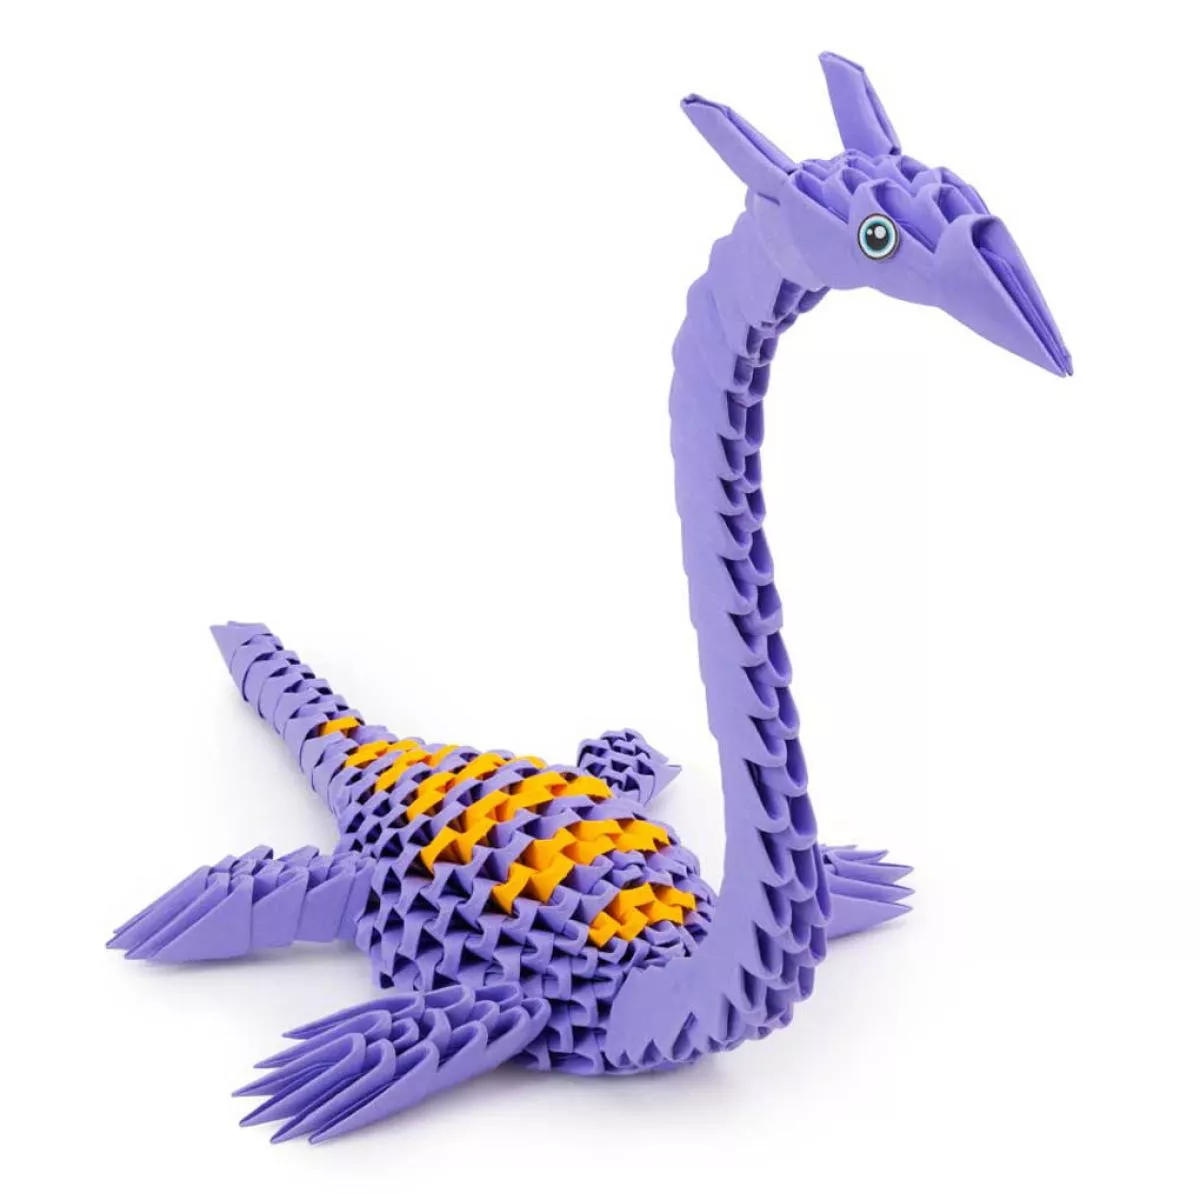 Origami 3D Falt-Puzzle "Dinosaurier" aus Papier